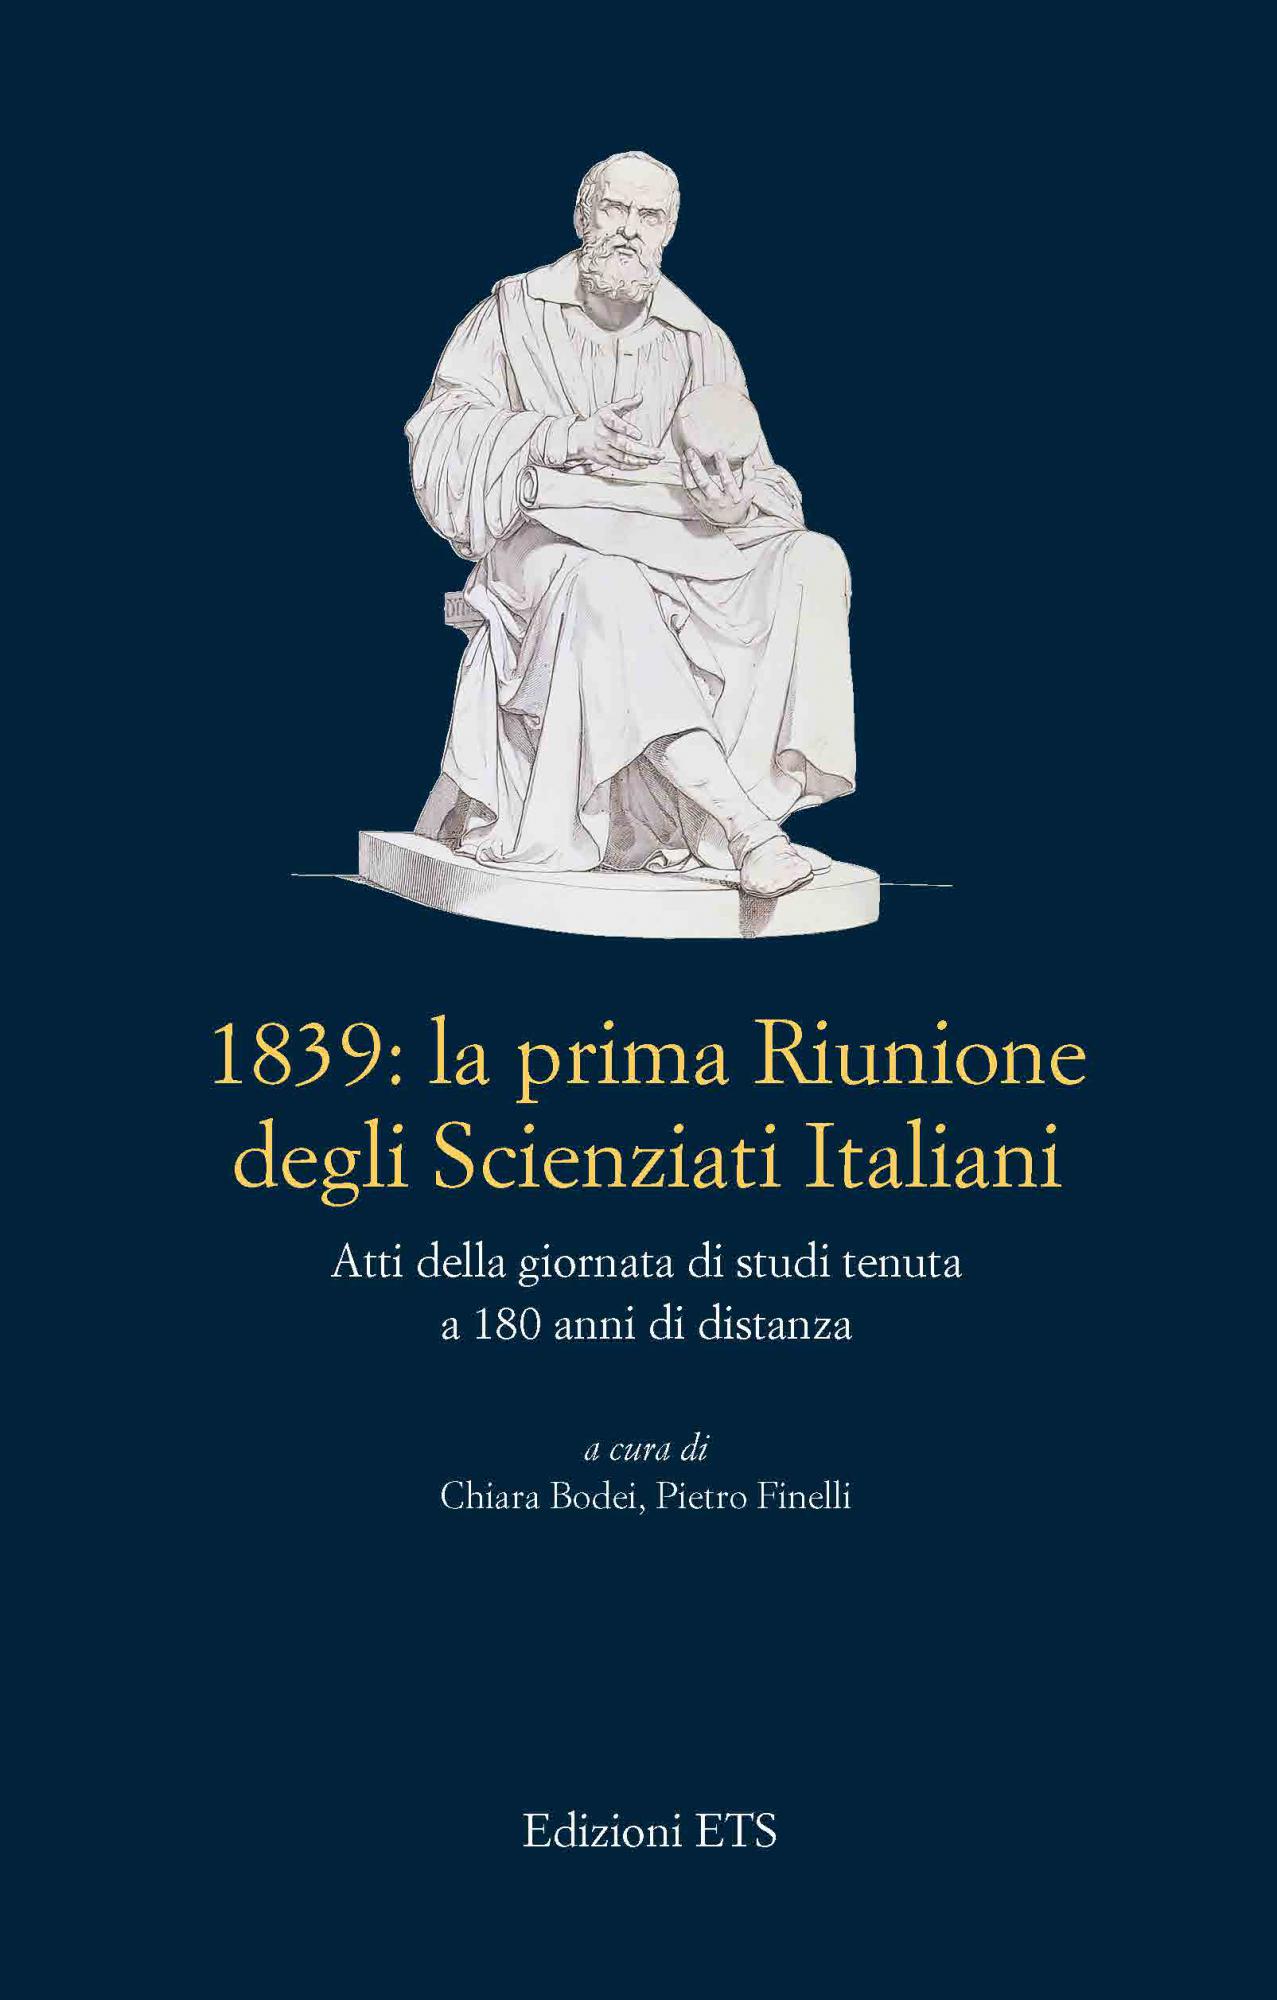 1839: la prima Riunione degli Scienziati Italiani .Atti della giornata di studi tenuta a 180 anni di distanza